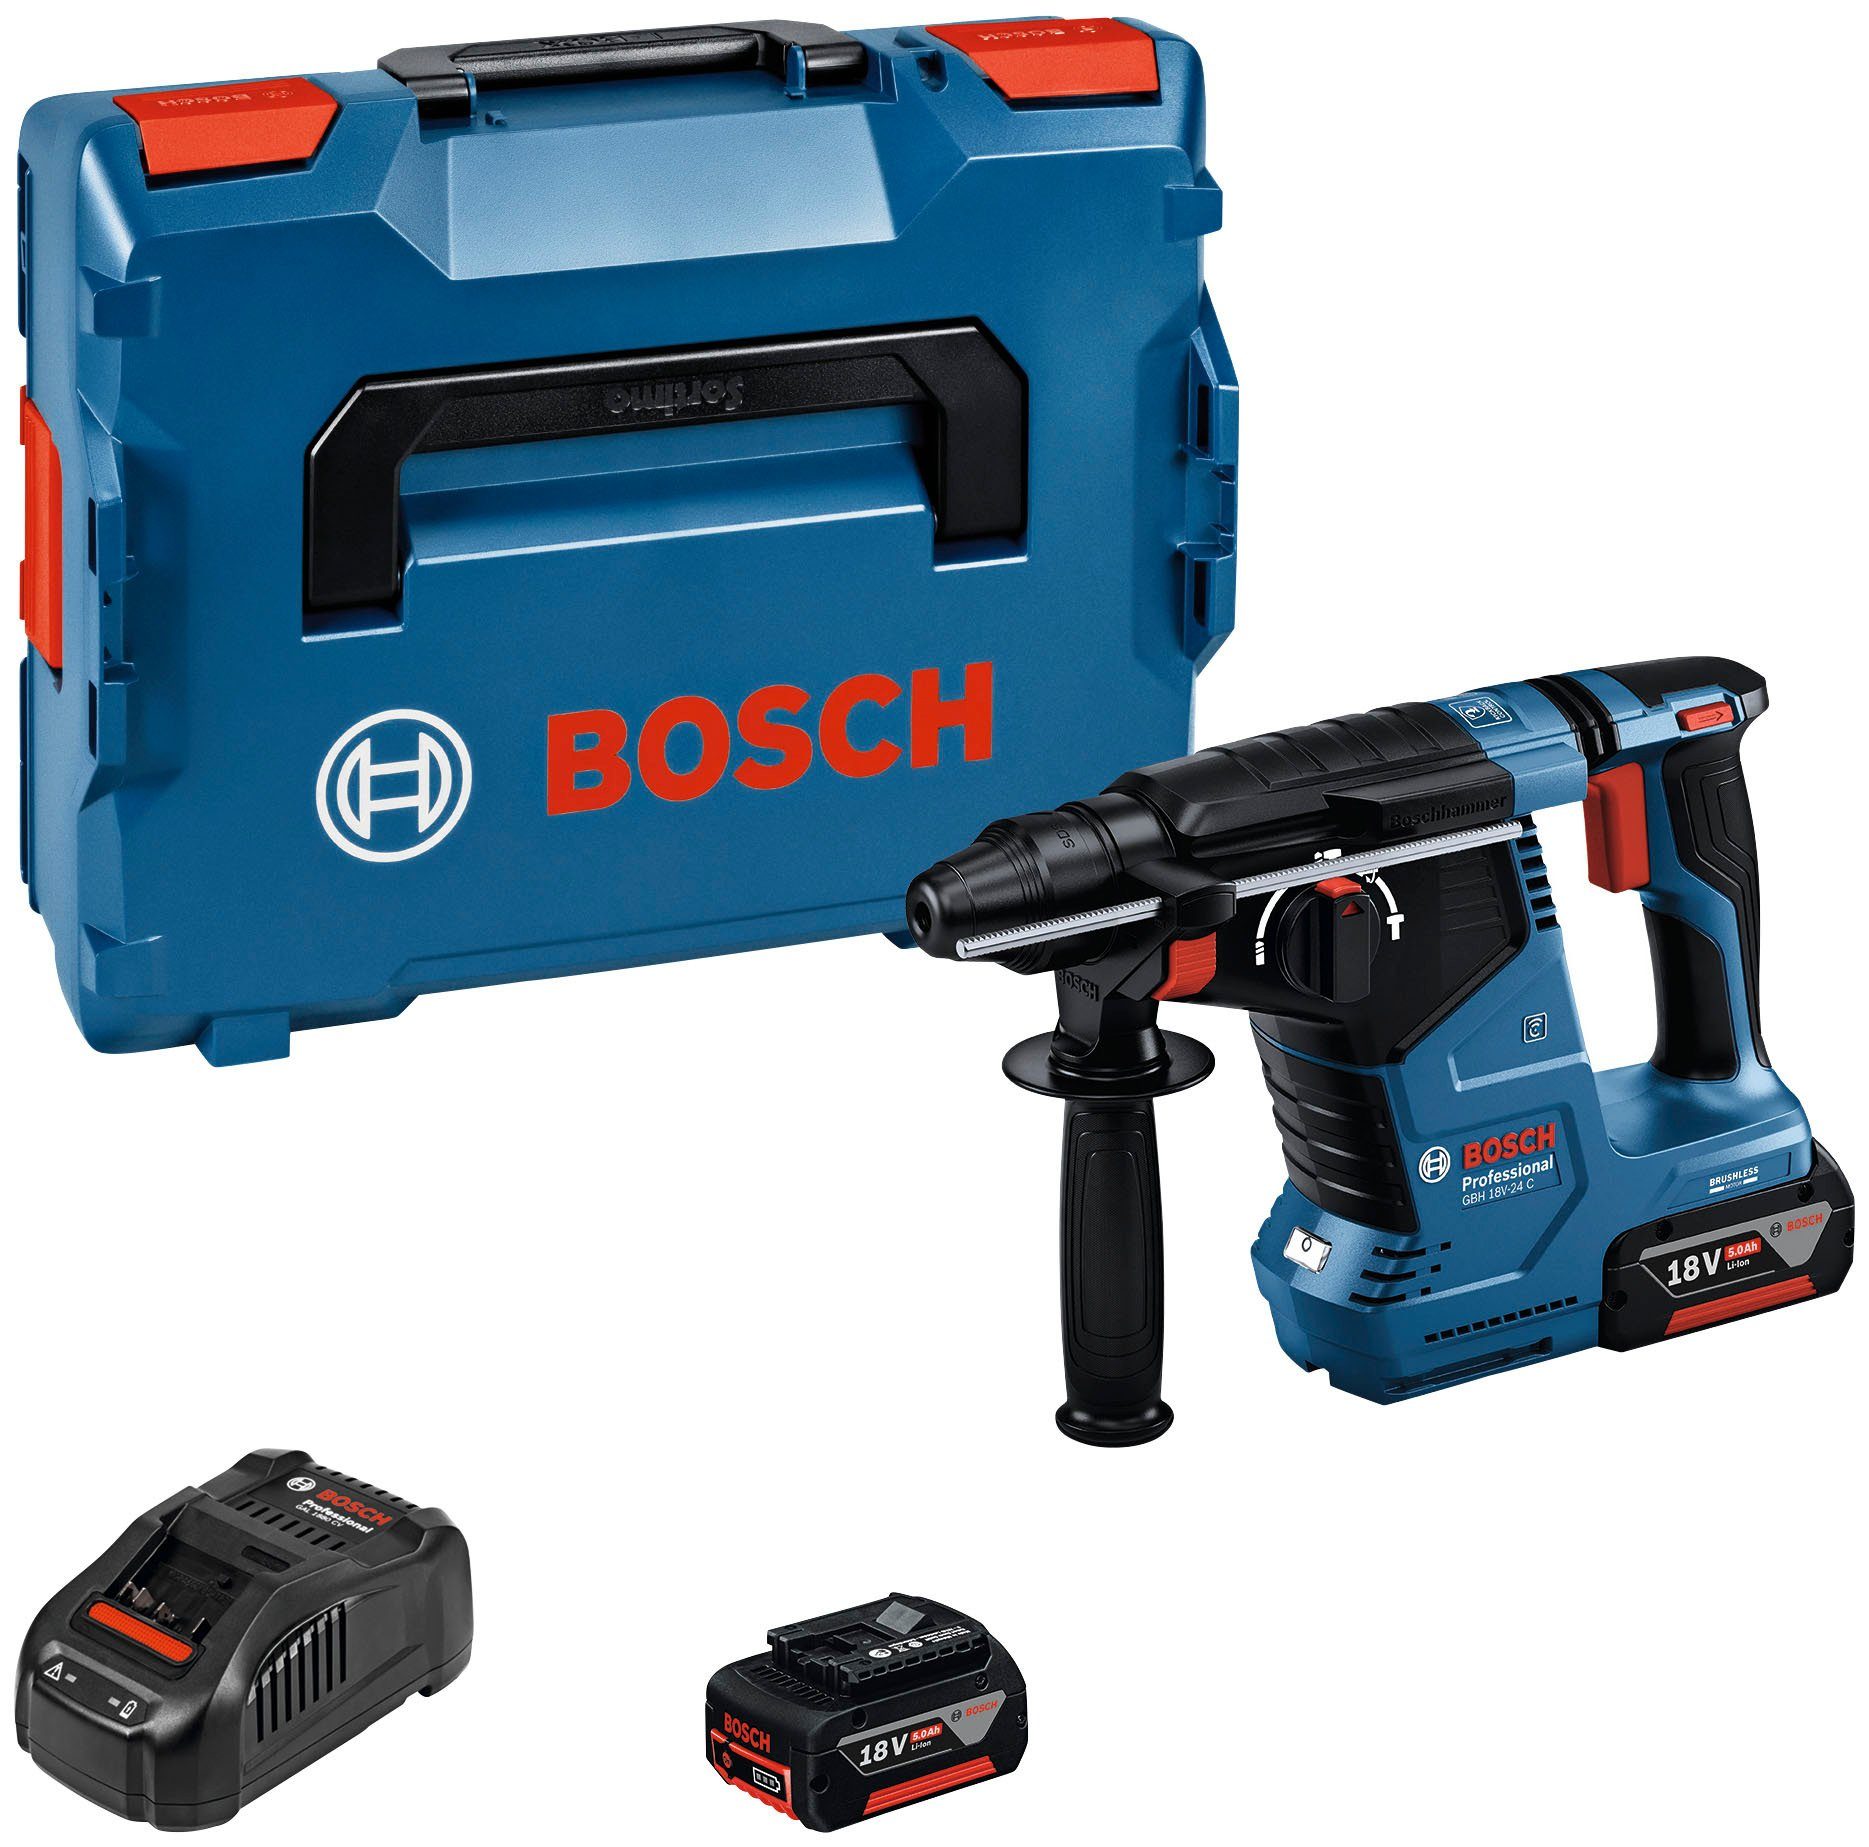 Bosch Professional Akku-Bohrhammer GBH 18V-24 C, 220-240 V, max. 980 U/min,  (Set), inkl. 2 Akkus und Ladegerät, Optimierter Antrieb für mehr Bohrlöcher  pro Ladung